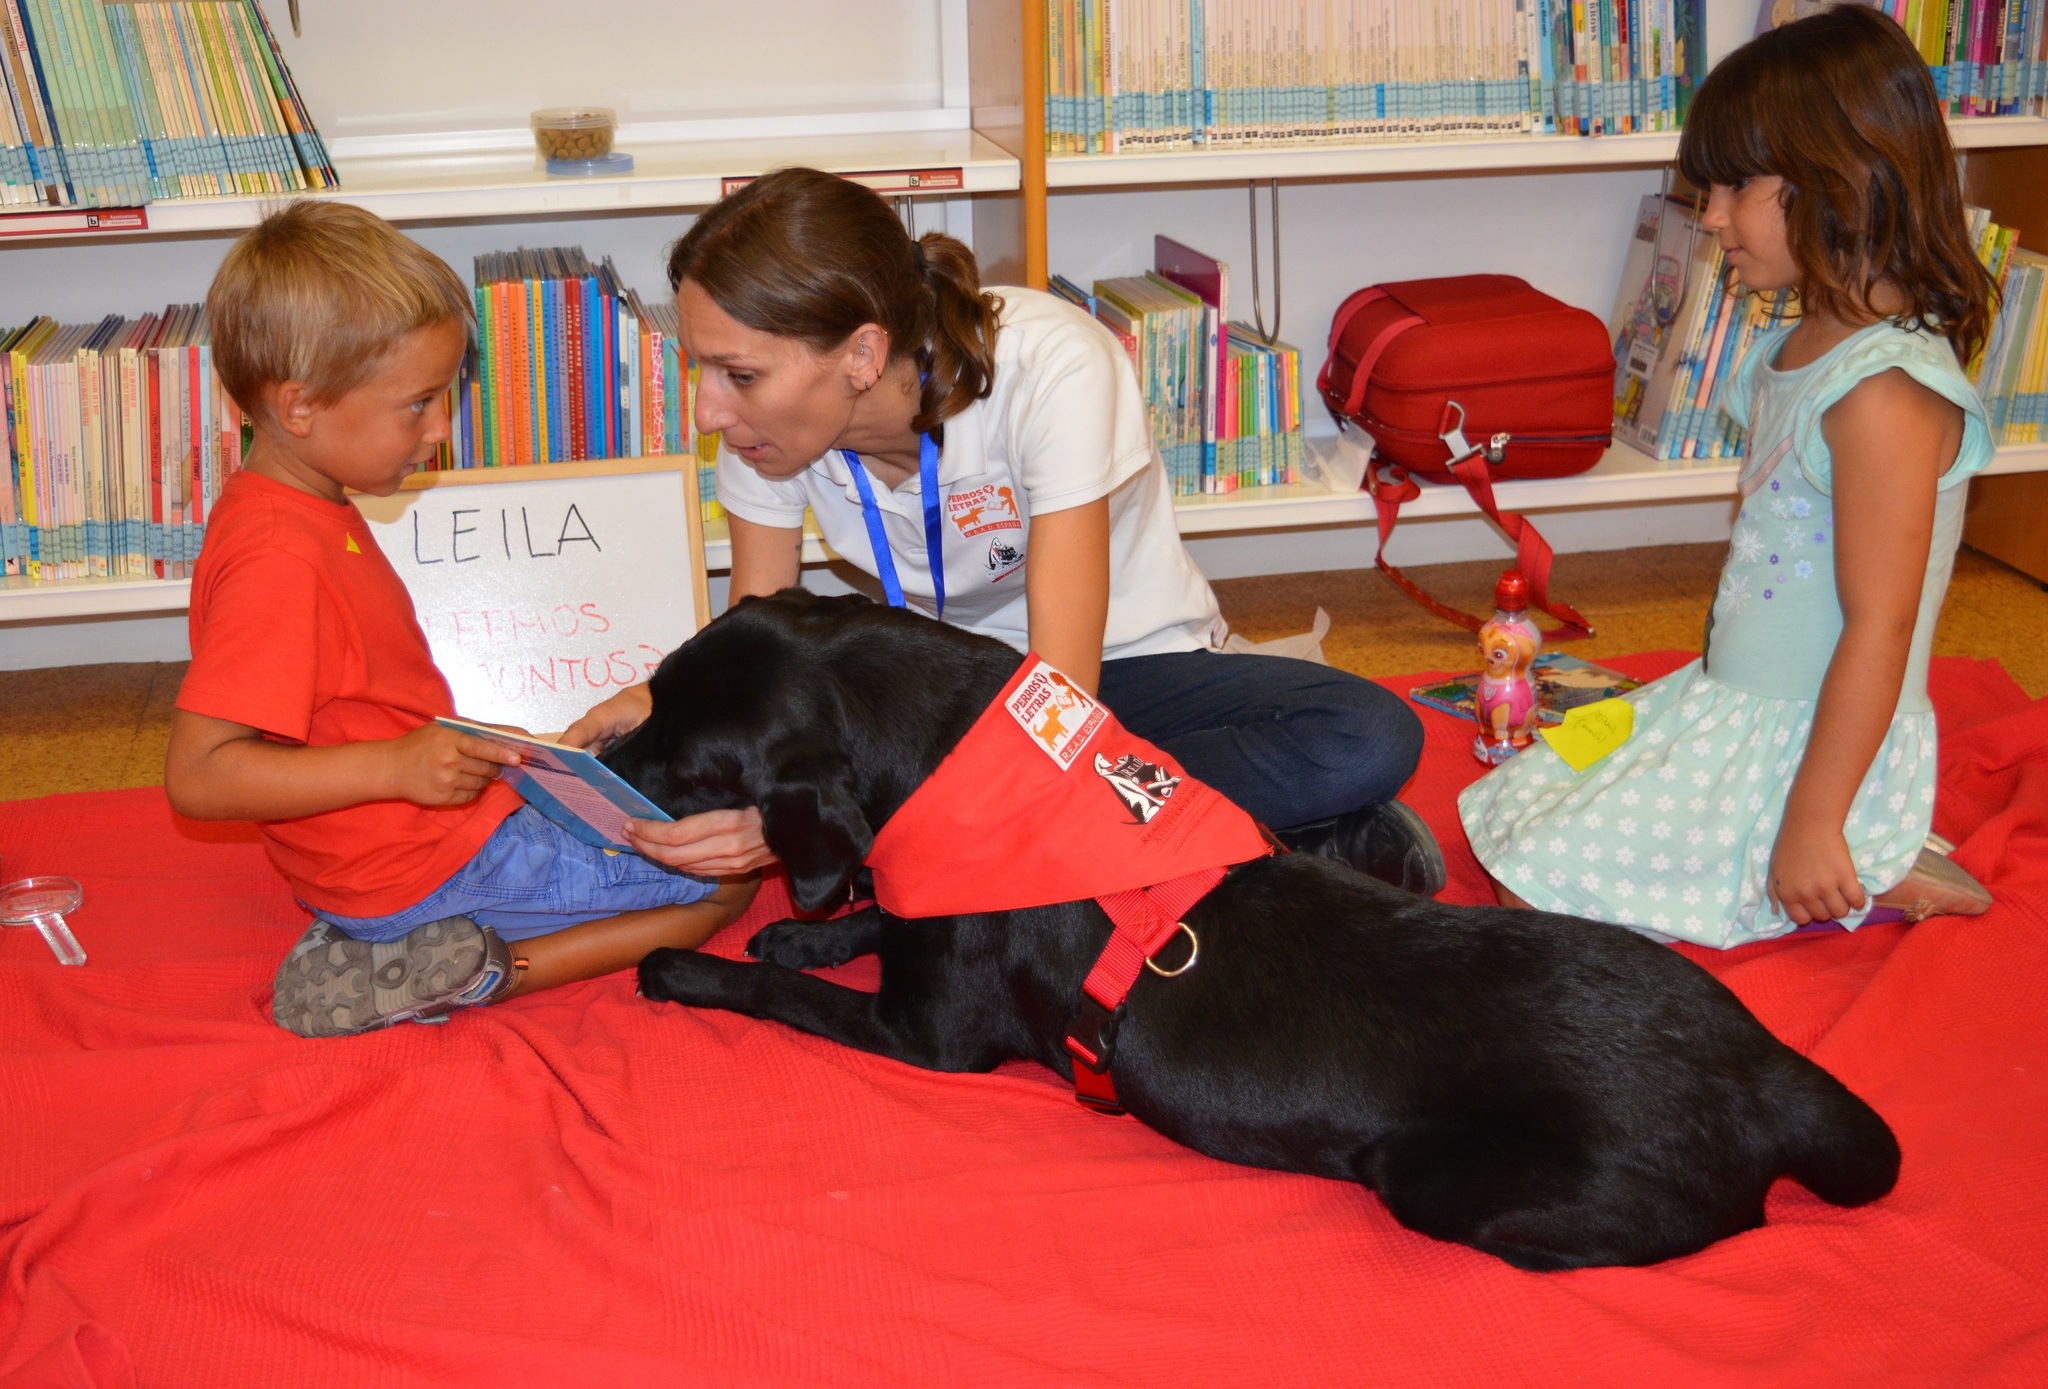 Ciudad en España usa perros para atraer niños a biblioteca y está funcionando!